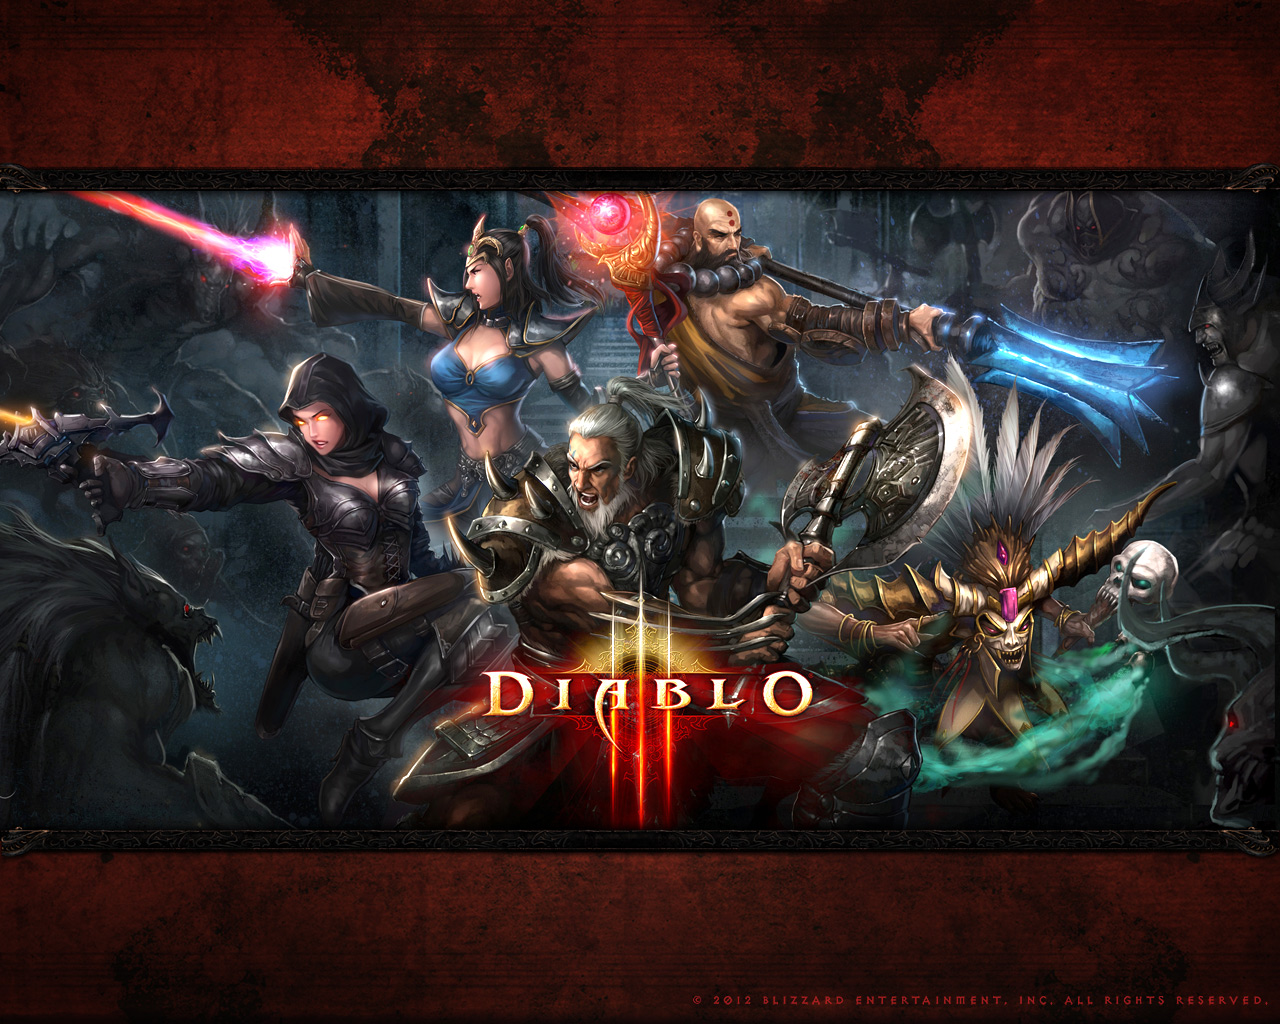 diablo 2 latest patch download